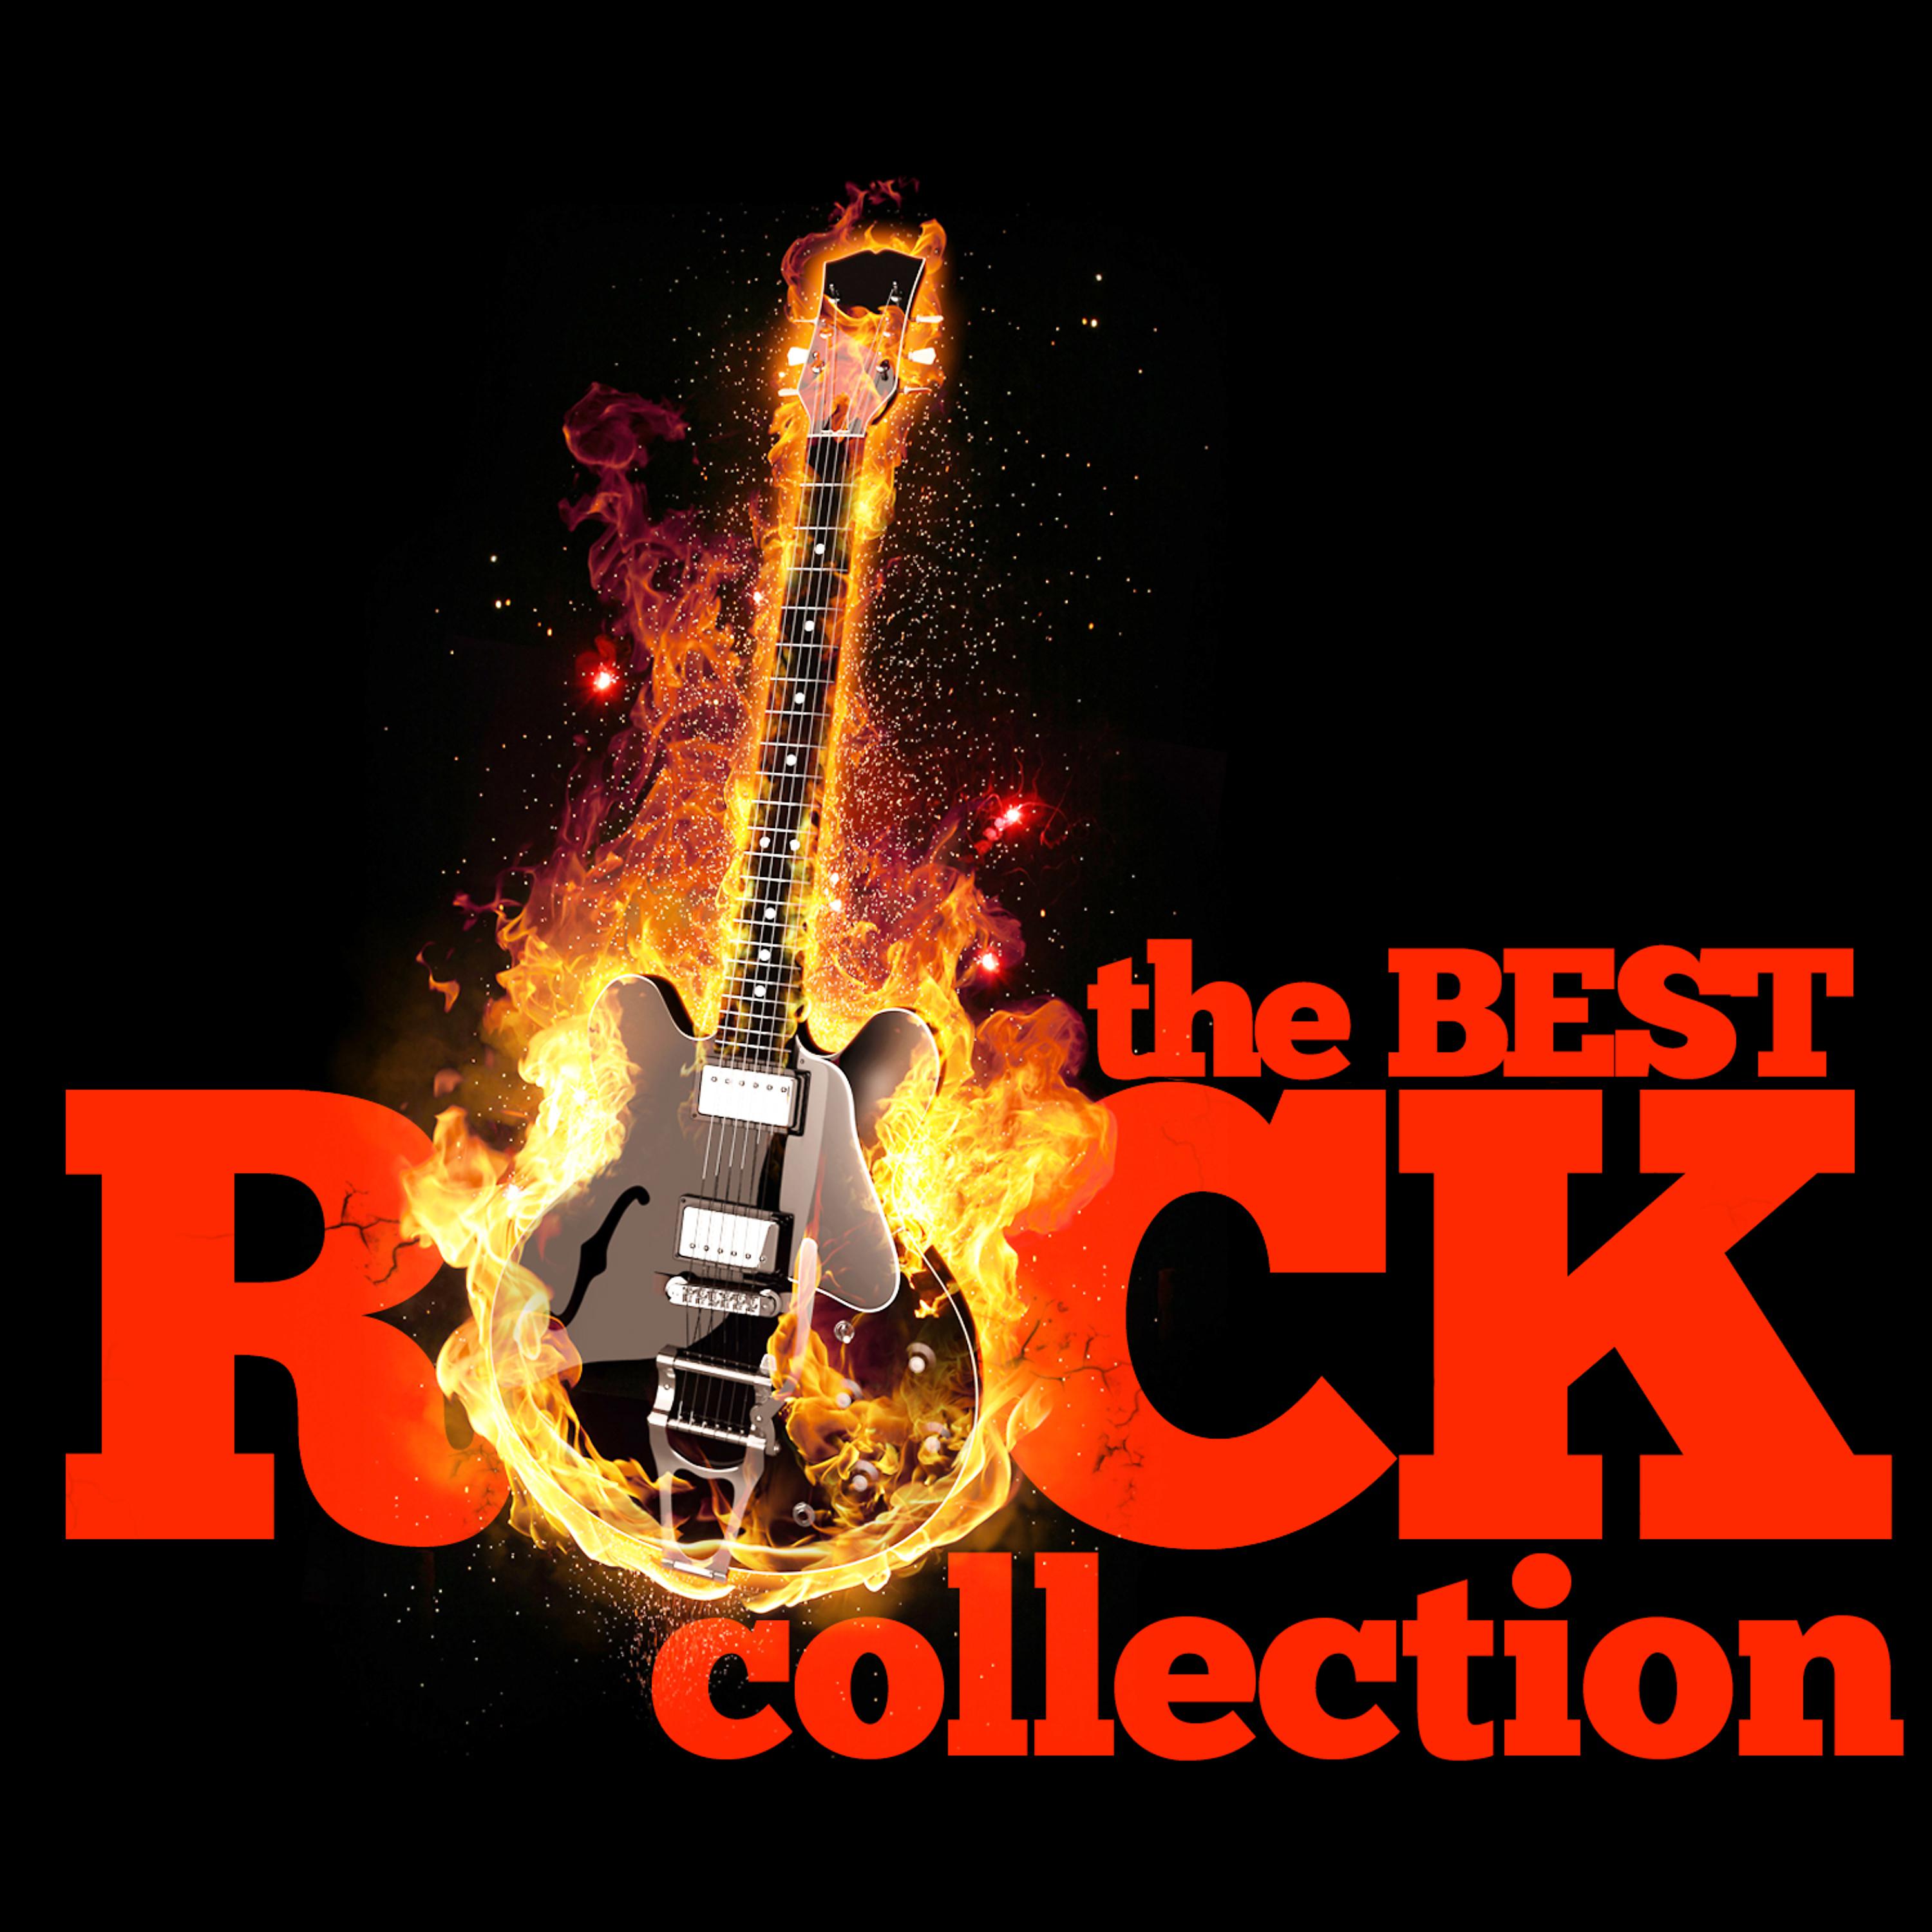 Сборники хорошей рок музыки. Рок. Рок обложка. Коллекция рок музыки. Обложки сборников рок музыки.